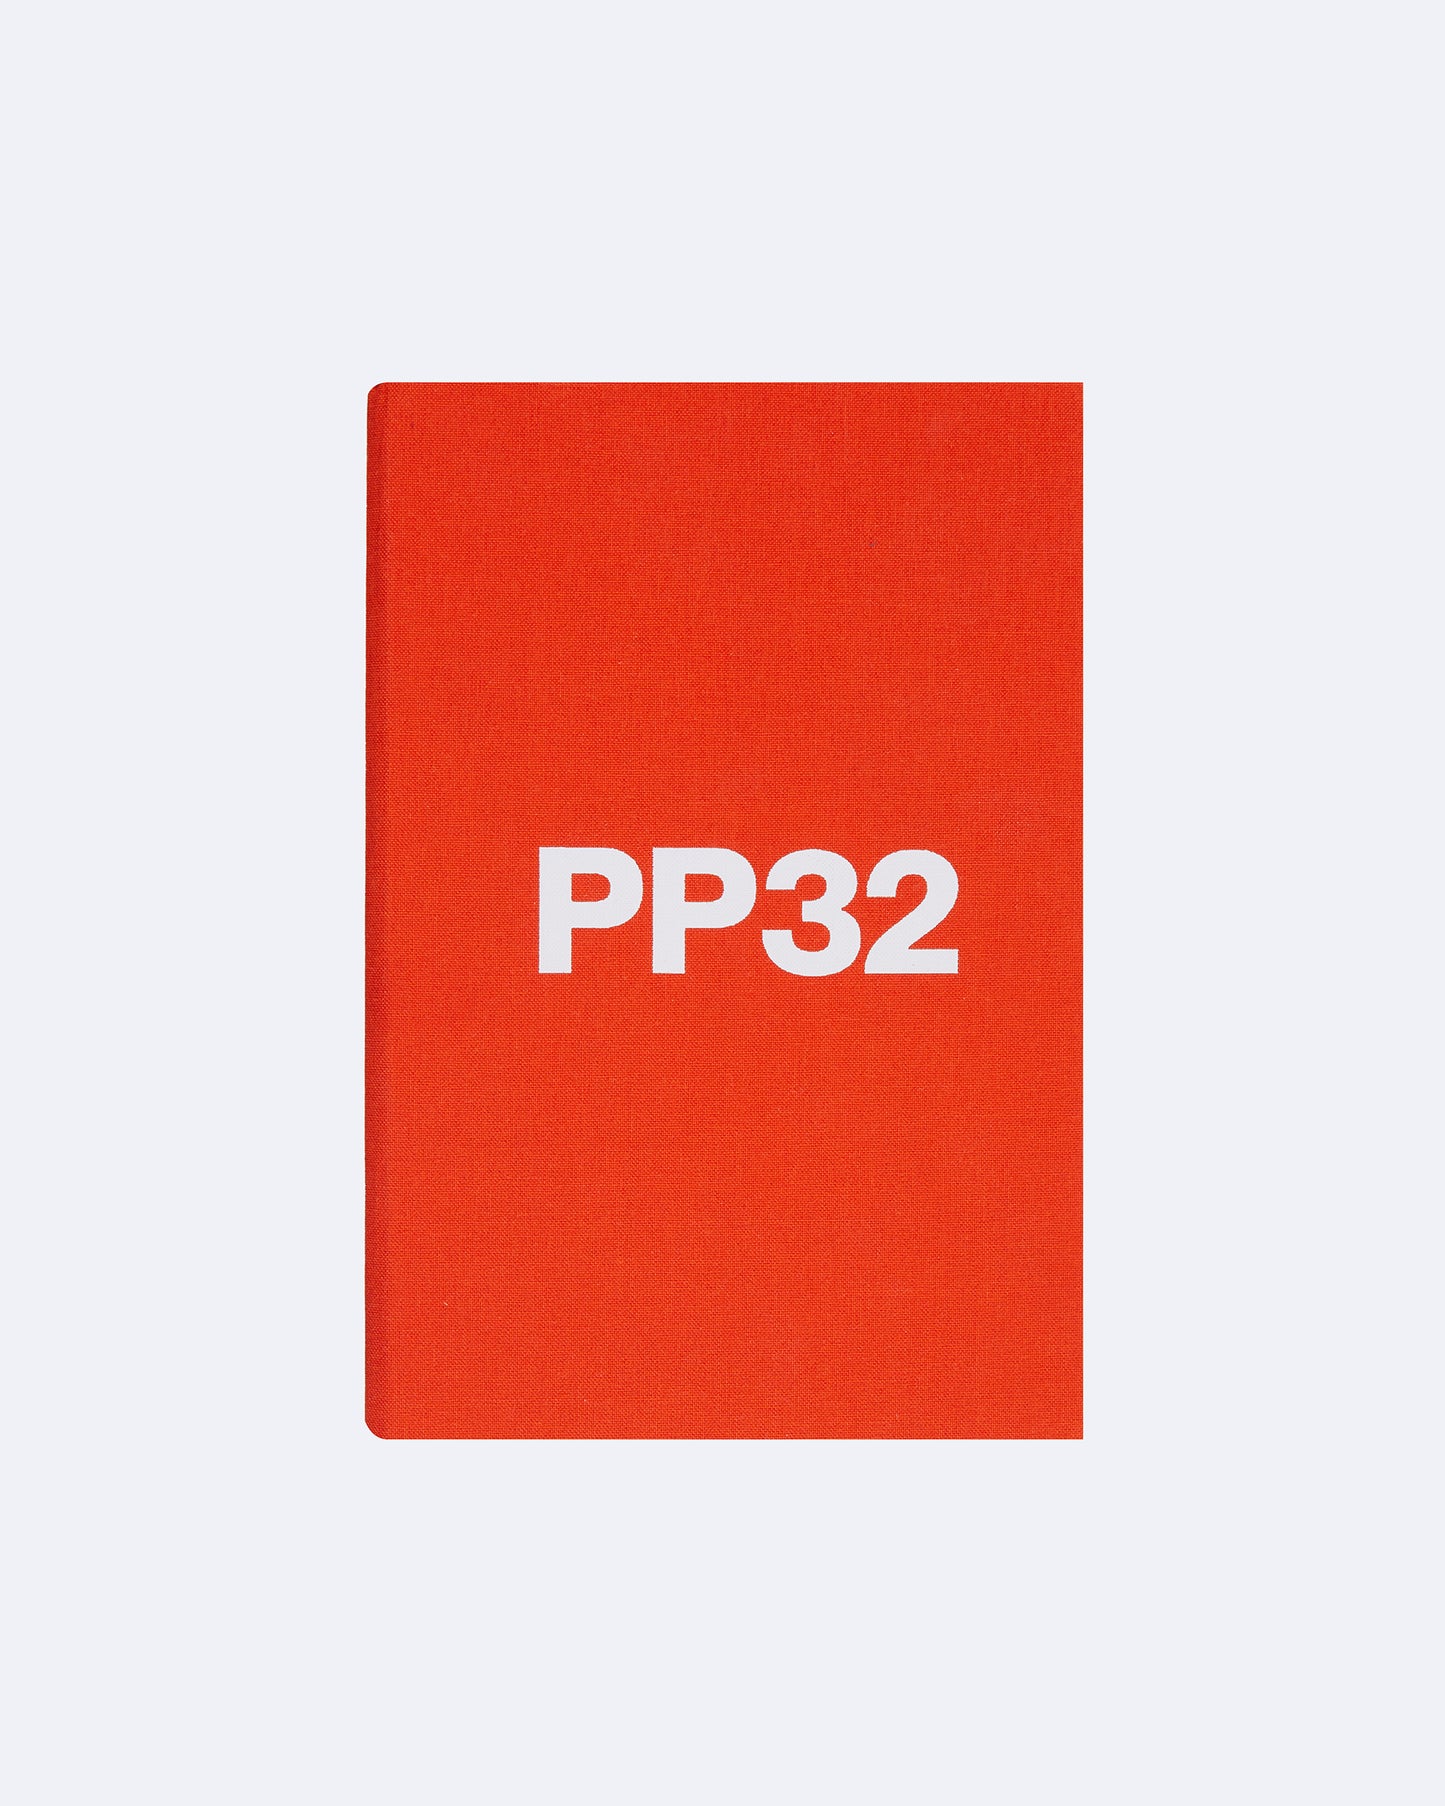 PP32 Specimen Book